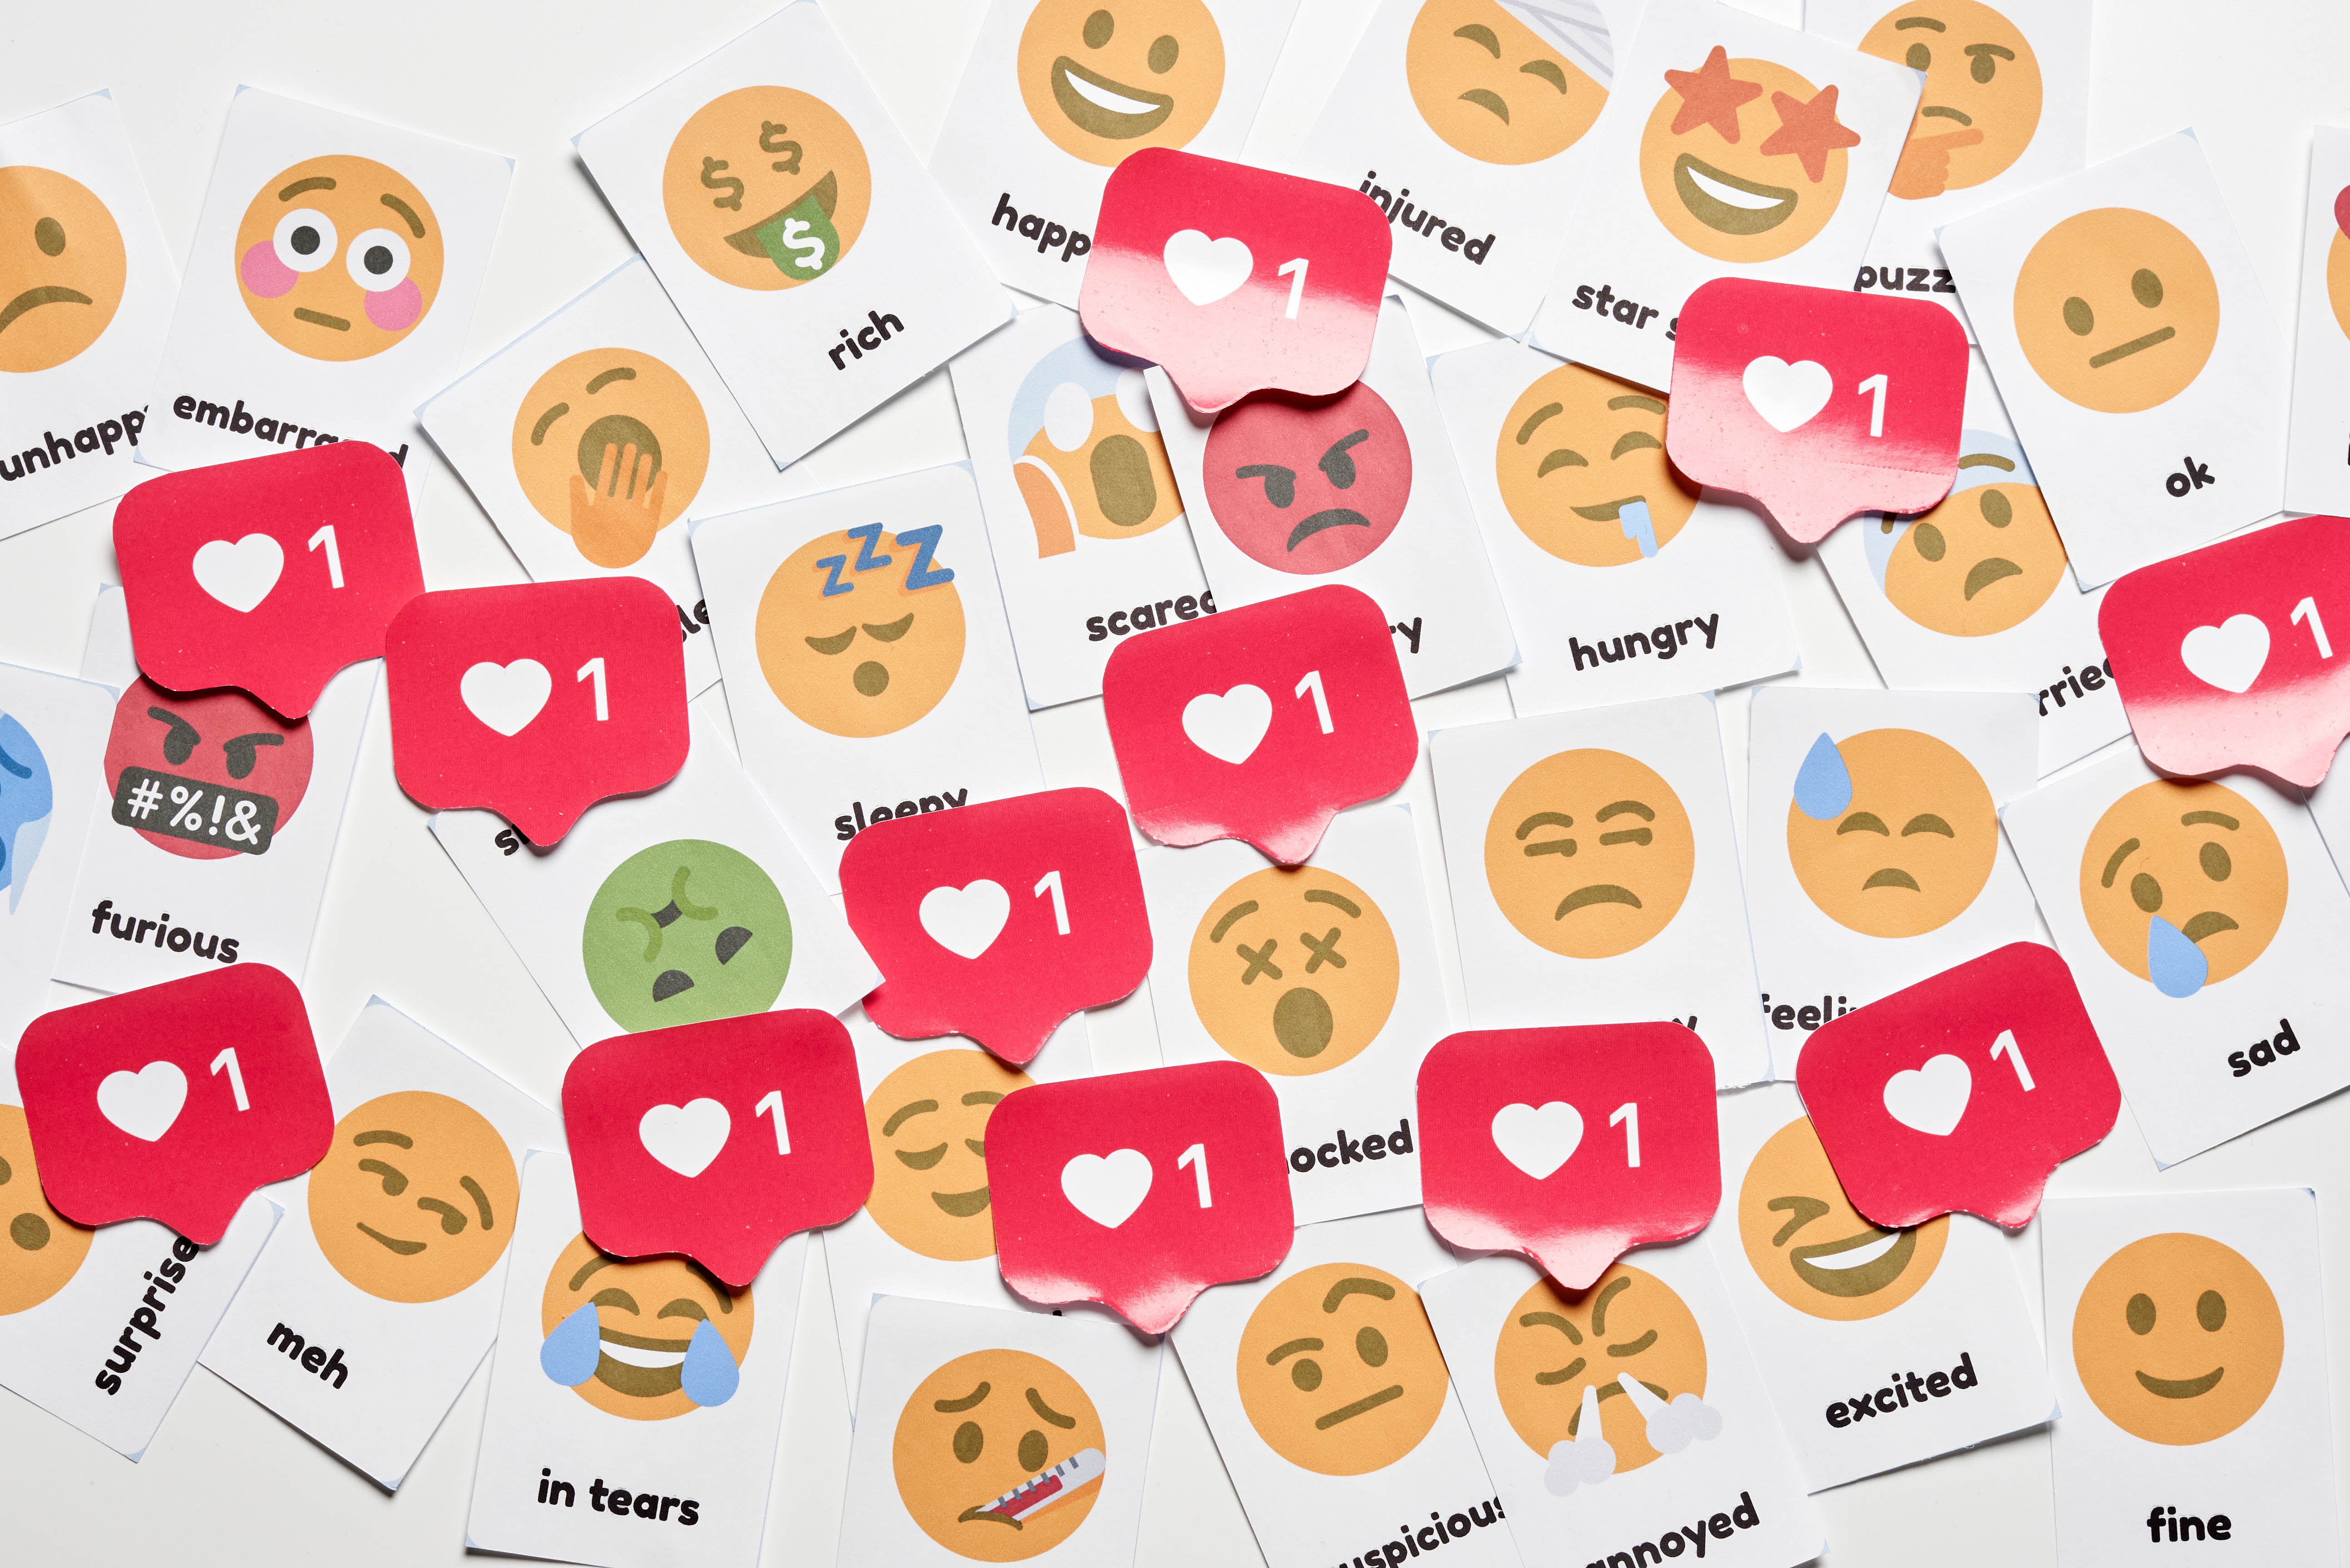 emoji, miscellaneous, emoticons, smileys, miscellanea, stickers, likes 2160p